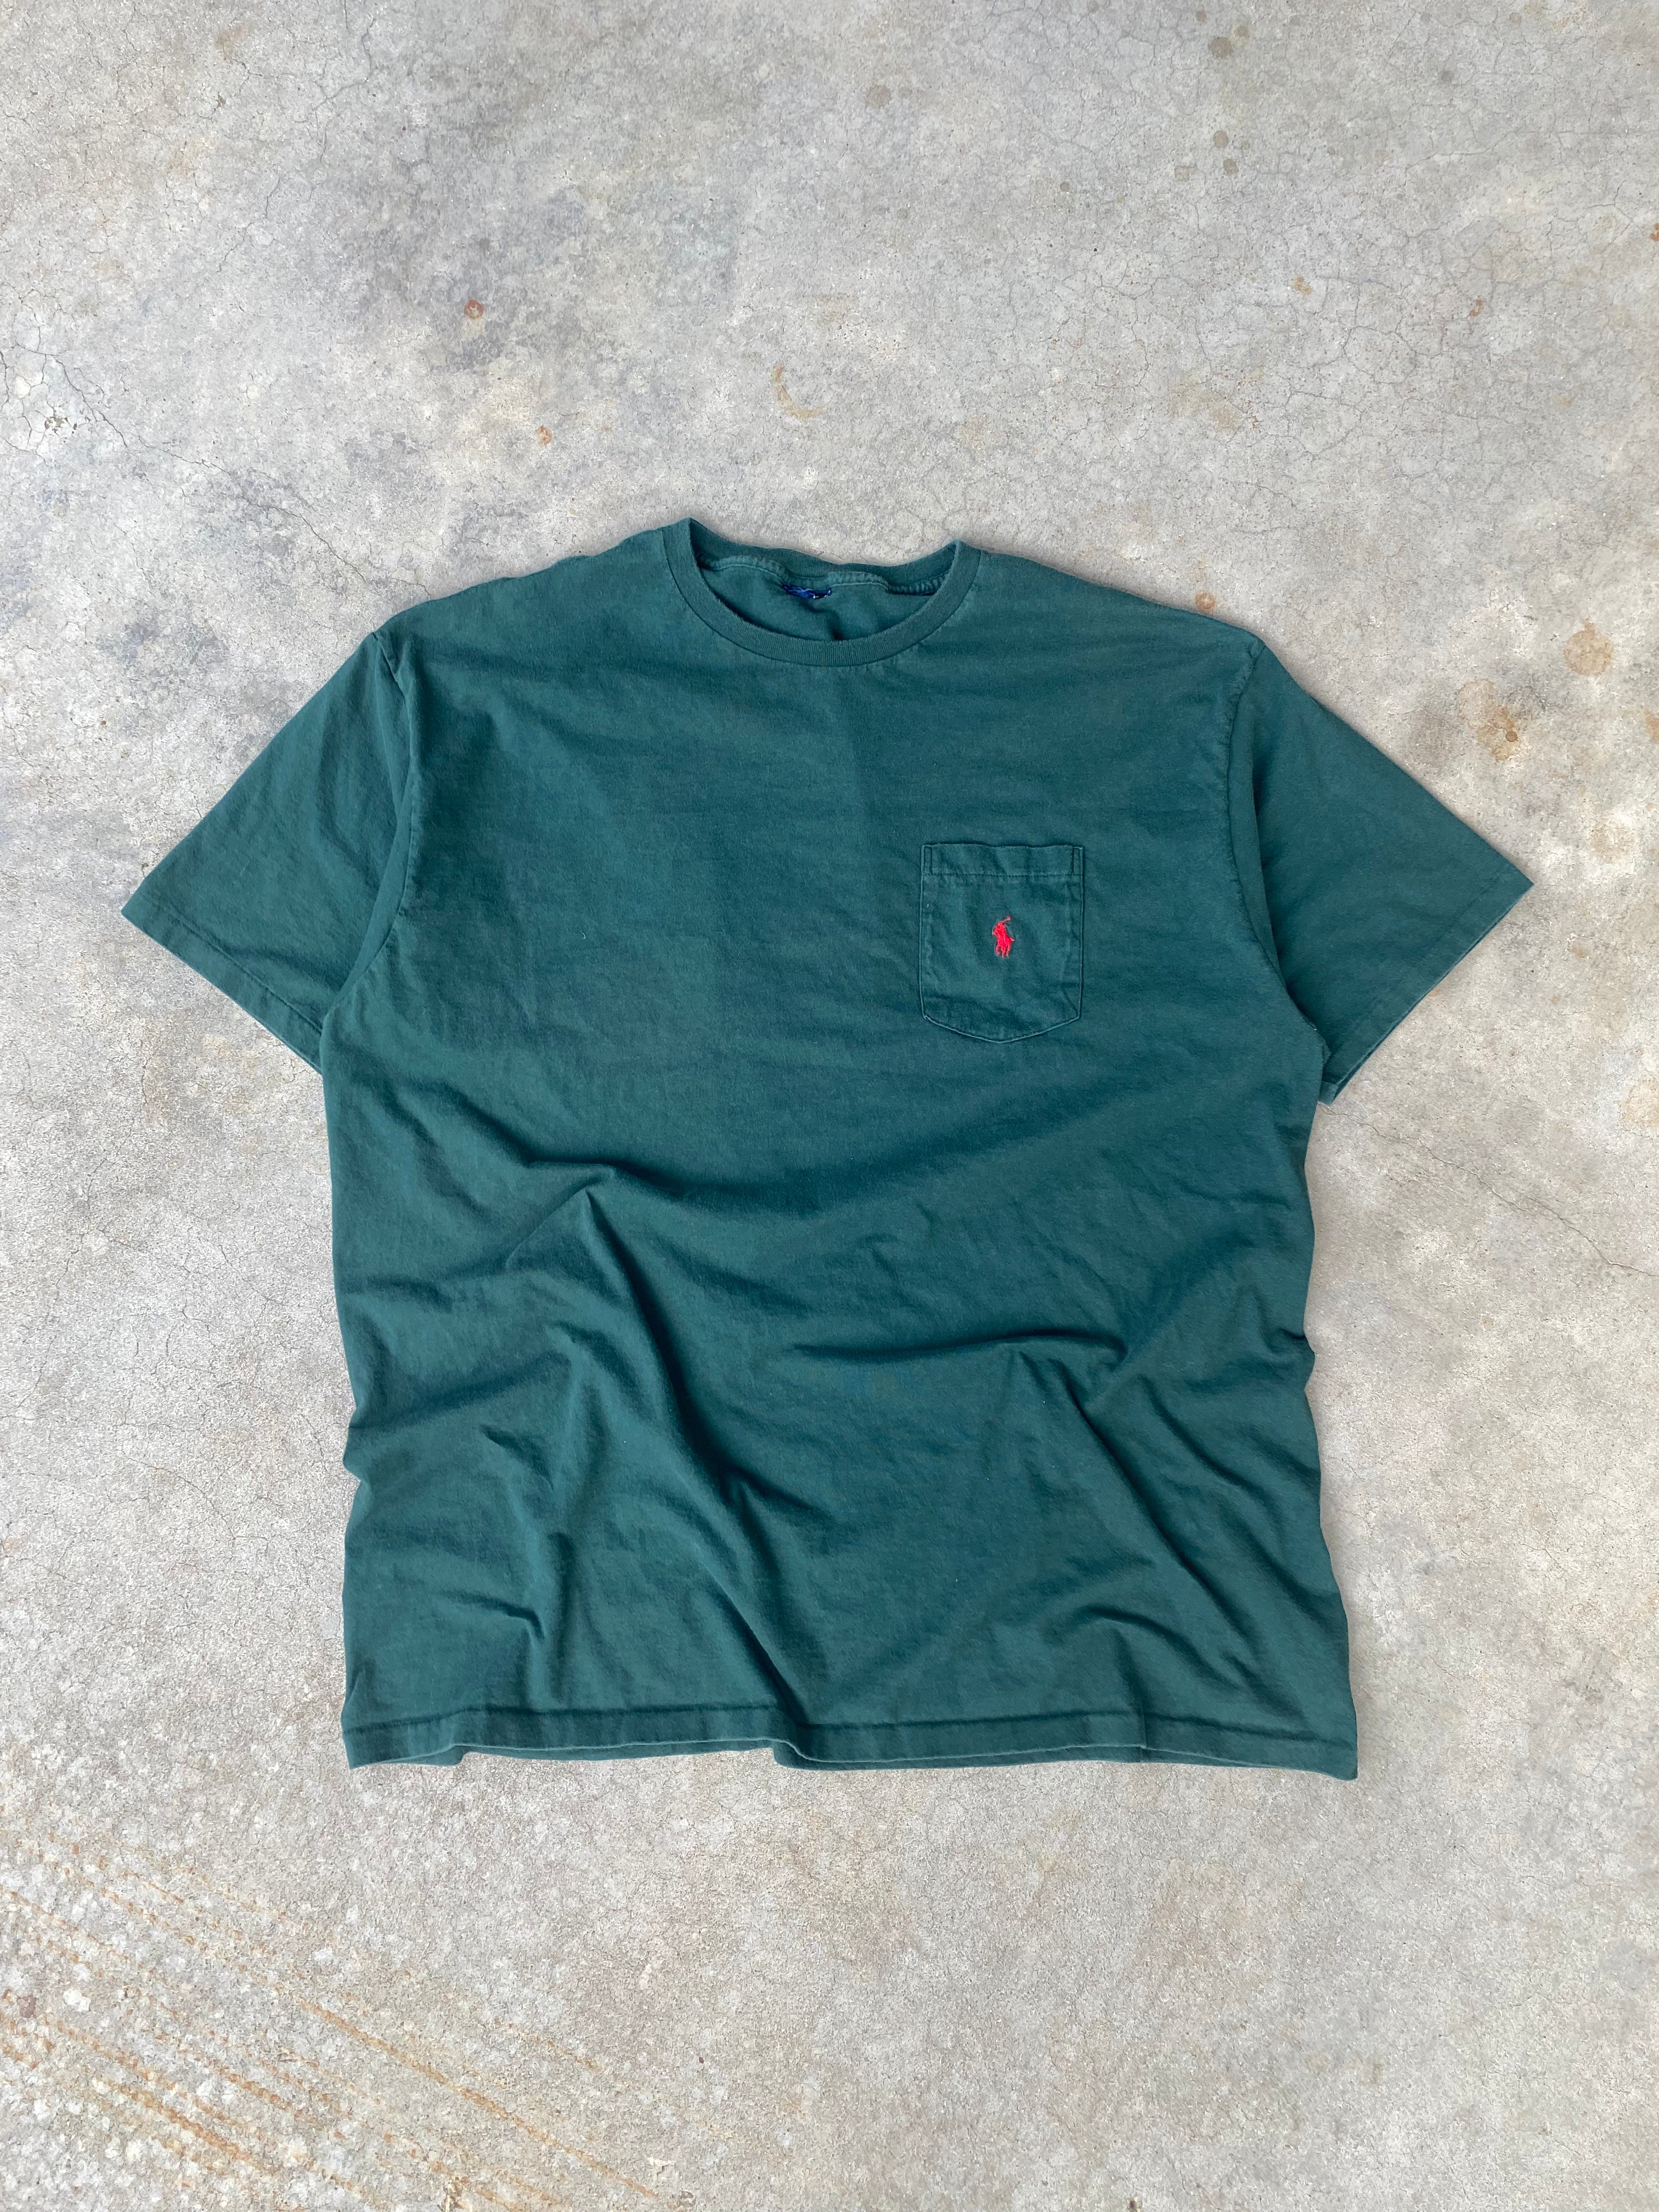 1990s Polo Ralph Lauren Selvedge Pocket T-Shirt (XL/XXL)